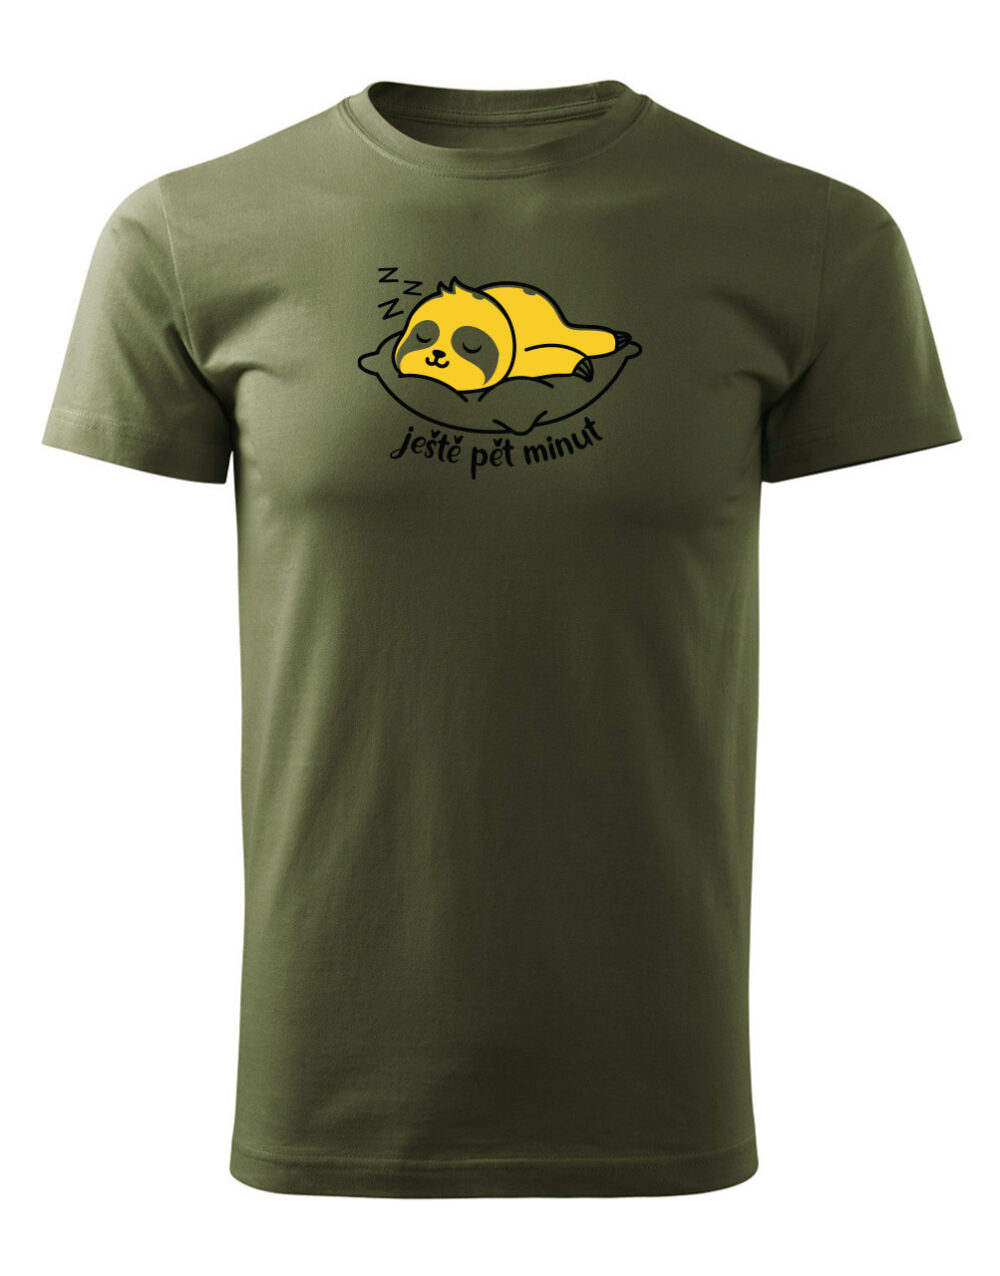 Pánské tričko s potiskem Ještě pět minut vojenská zelená